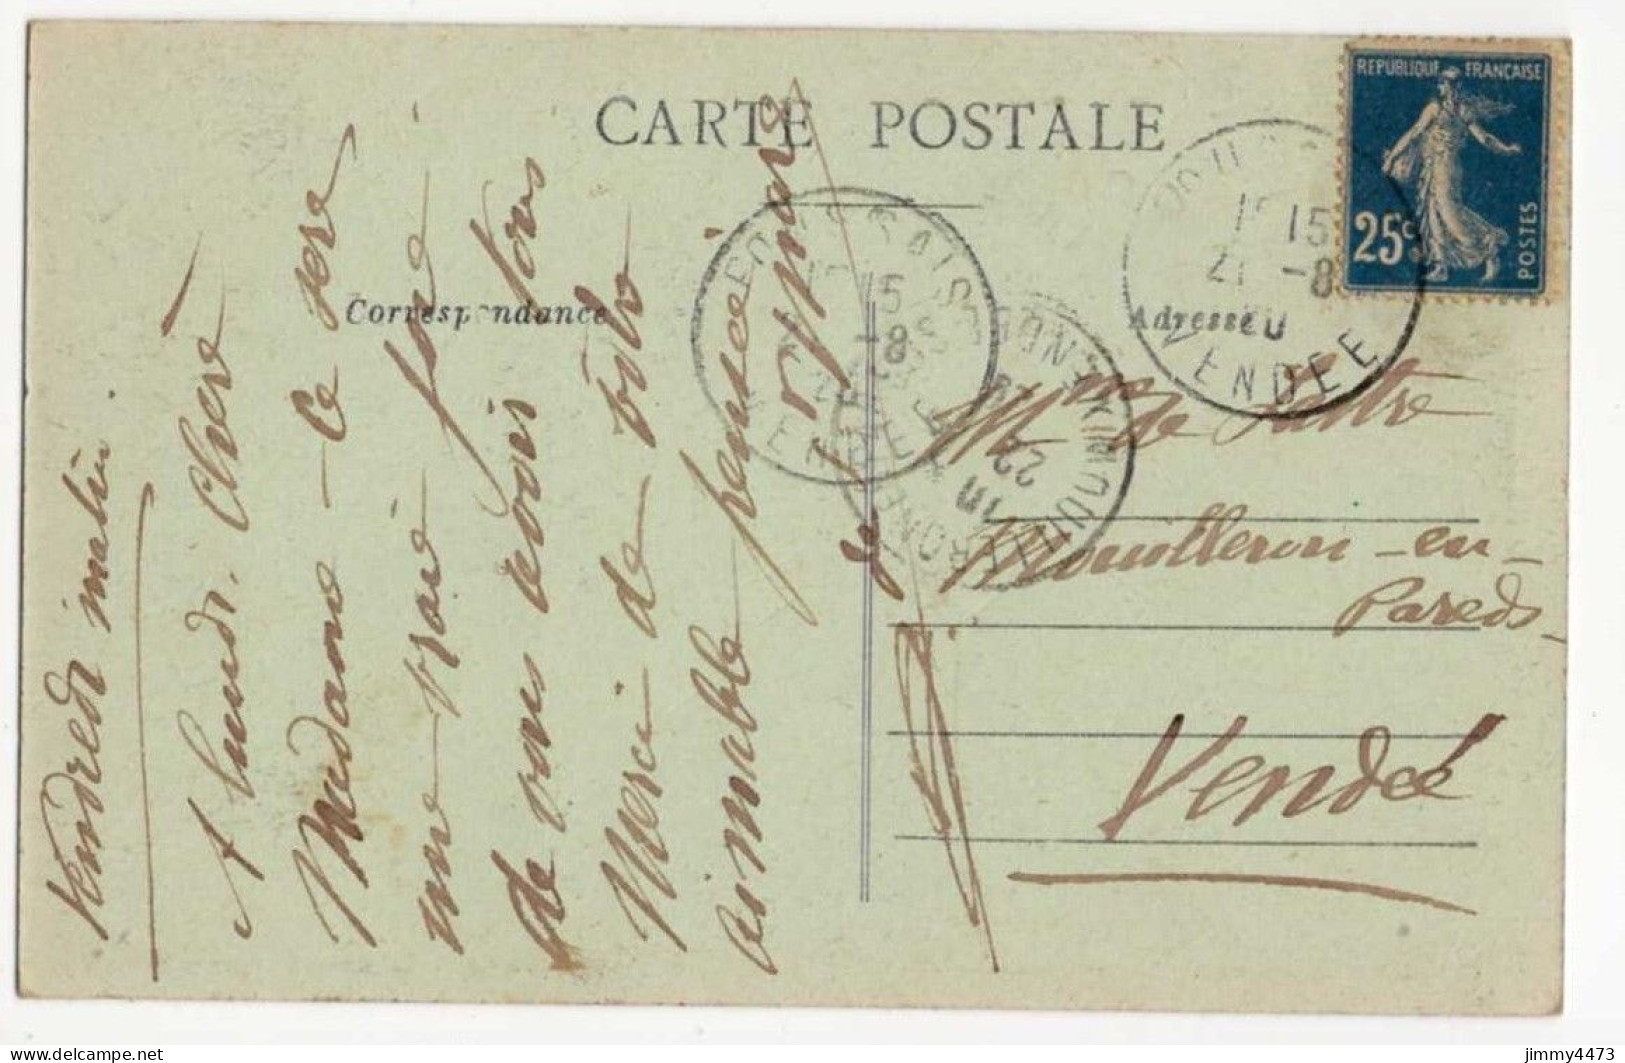 CPA - FOUSSAIS En 1928 - Château De Sérigné ( Canton De Saint Hilaire Des Loges Vendée ) N° 4770 - Edit. Bergevin - Saint Hilaire Des Loges